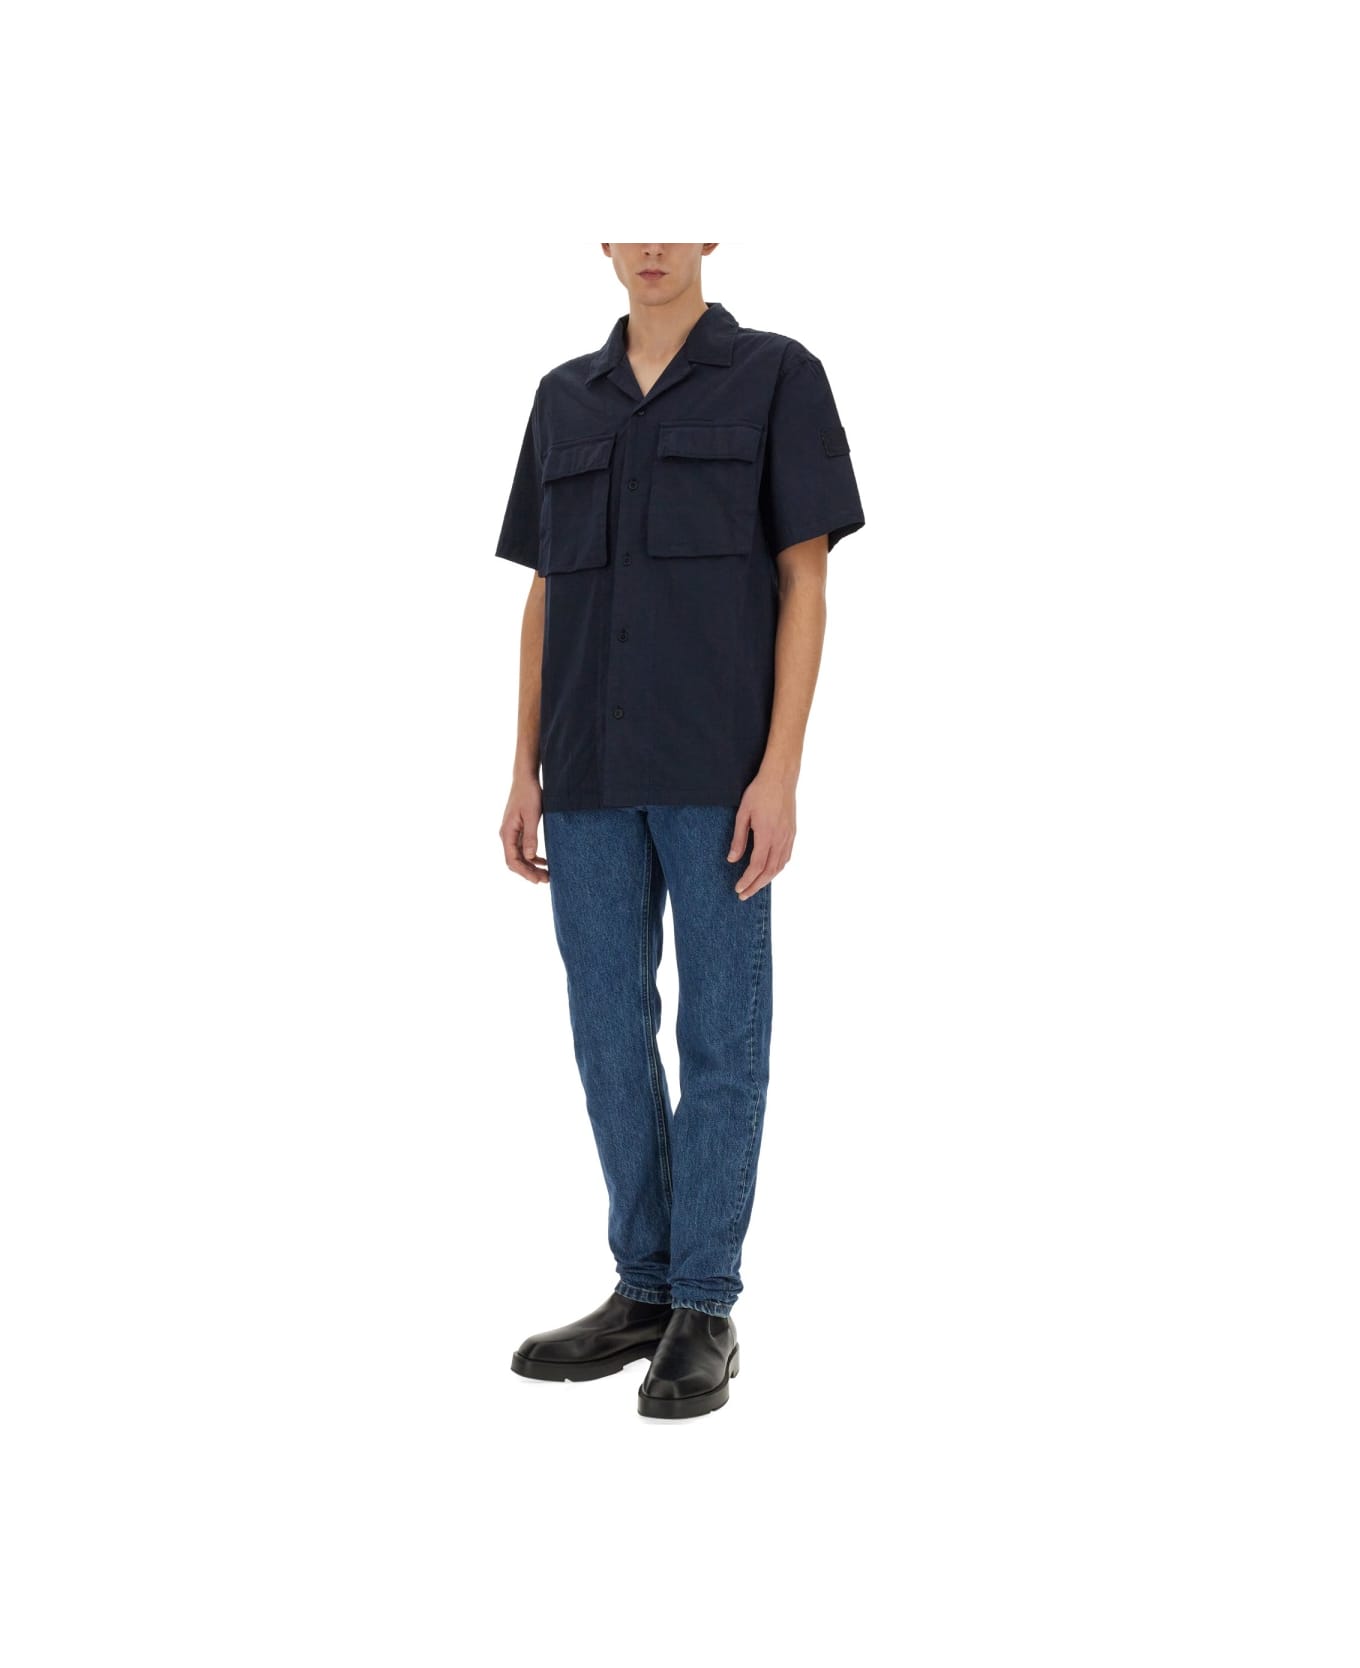 Belstaff Shirt With Pockets - BLUE